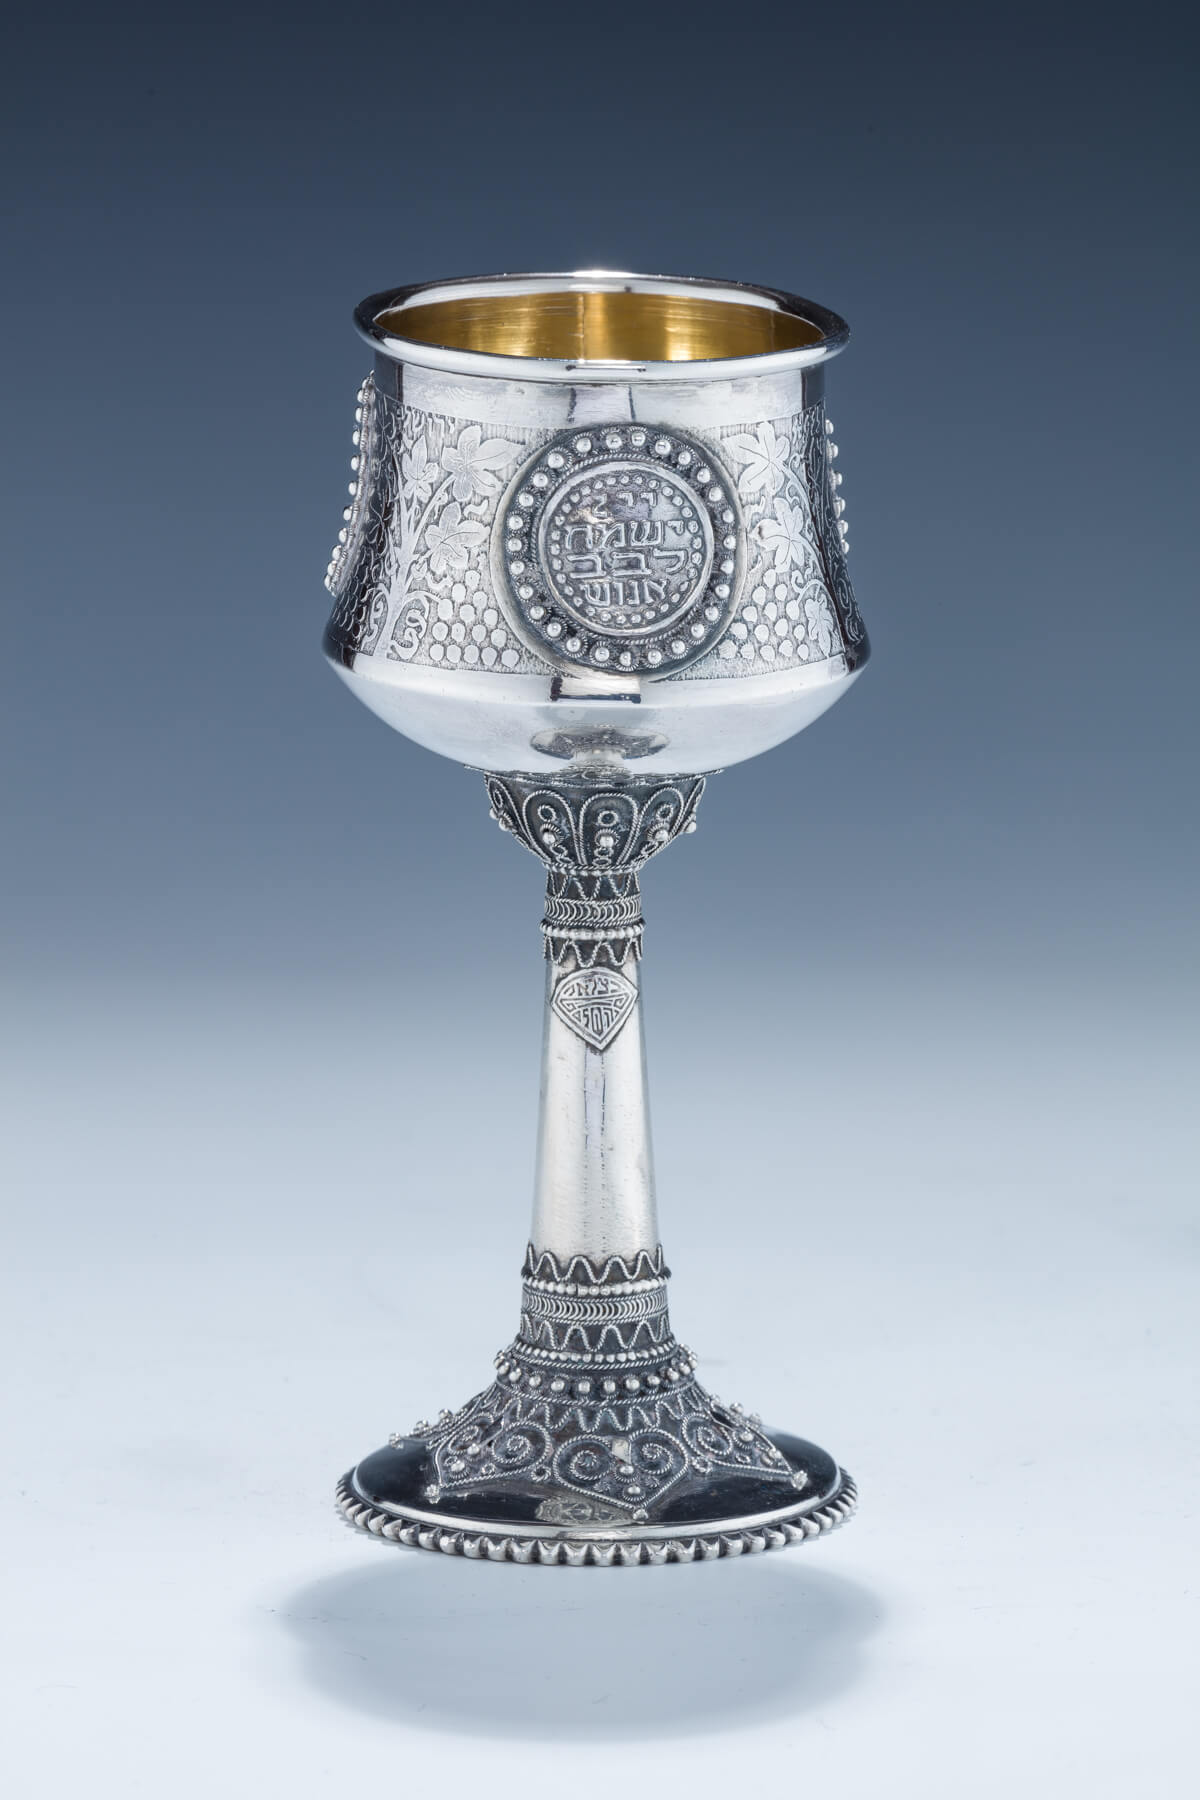 10. A Sterling Silver Kiddush Cup by the Bezalel School